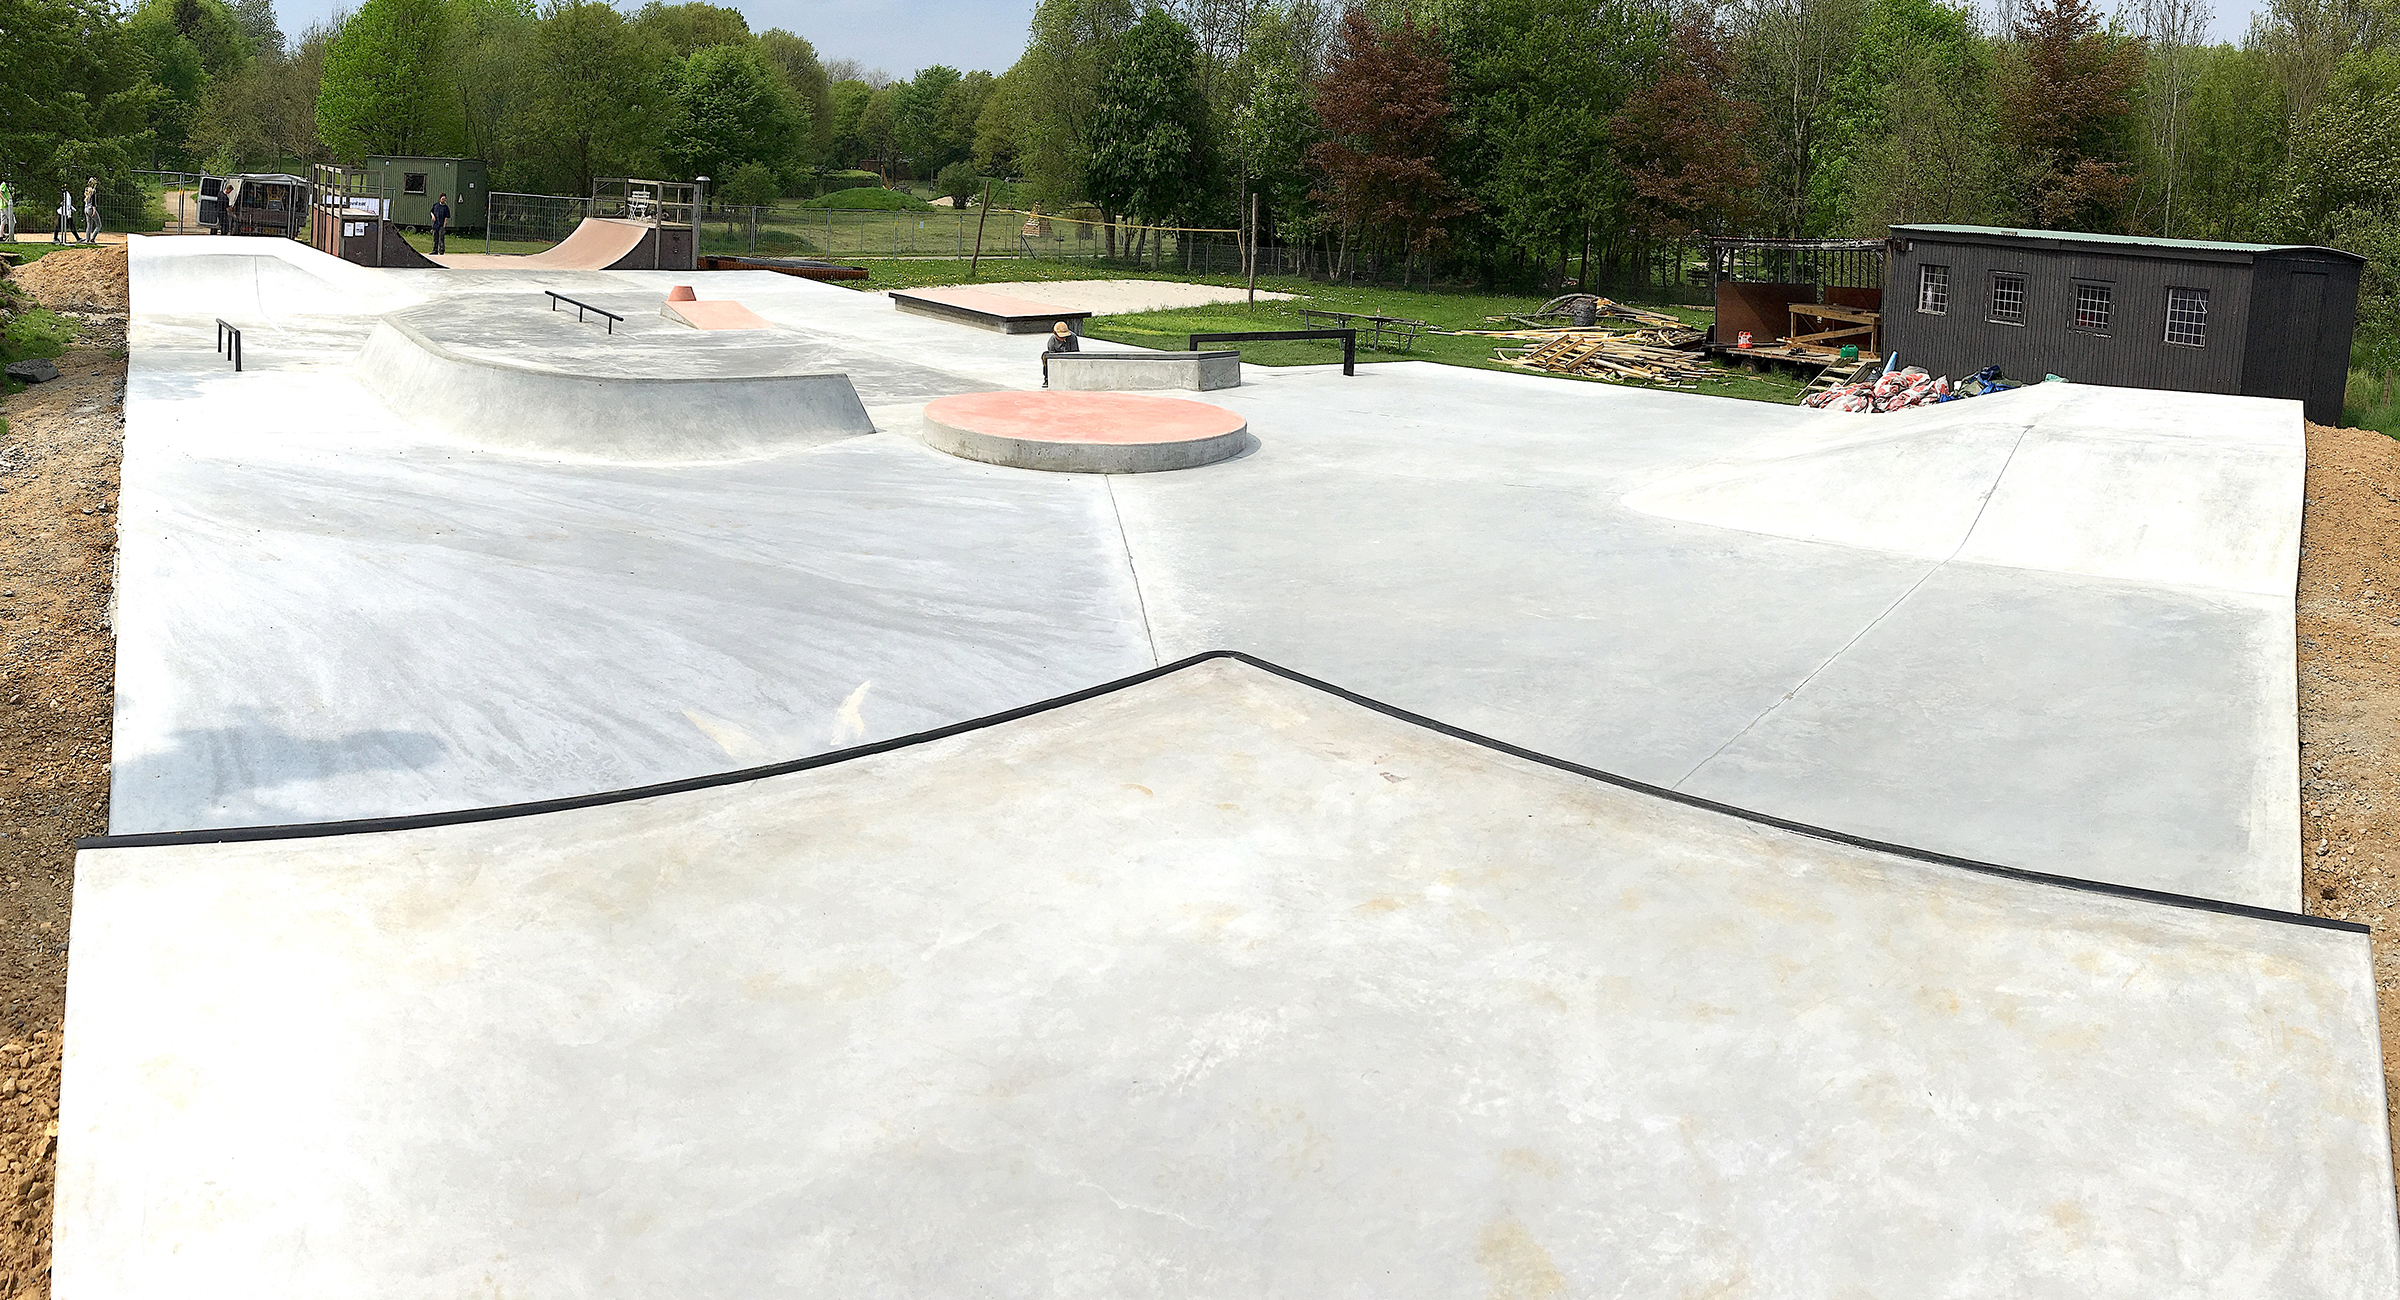 Overbliksbillede af Jelling Skatepark hvor man kan se flere skateboardramper i beton